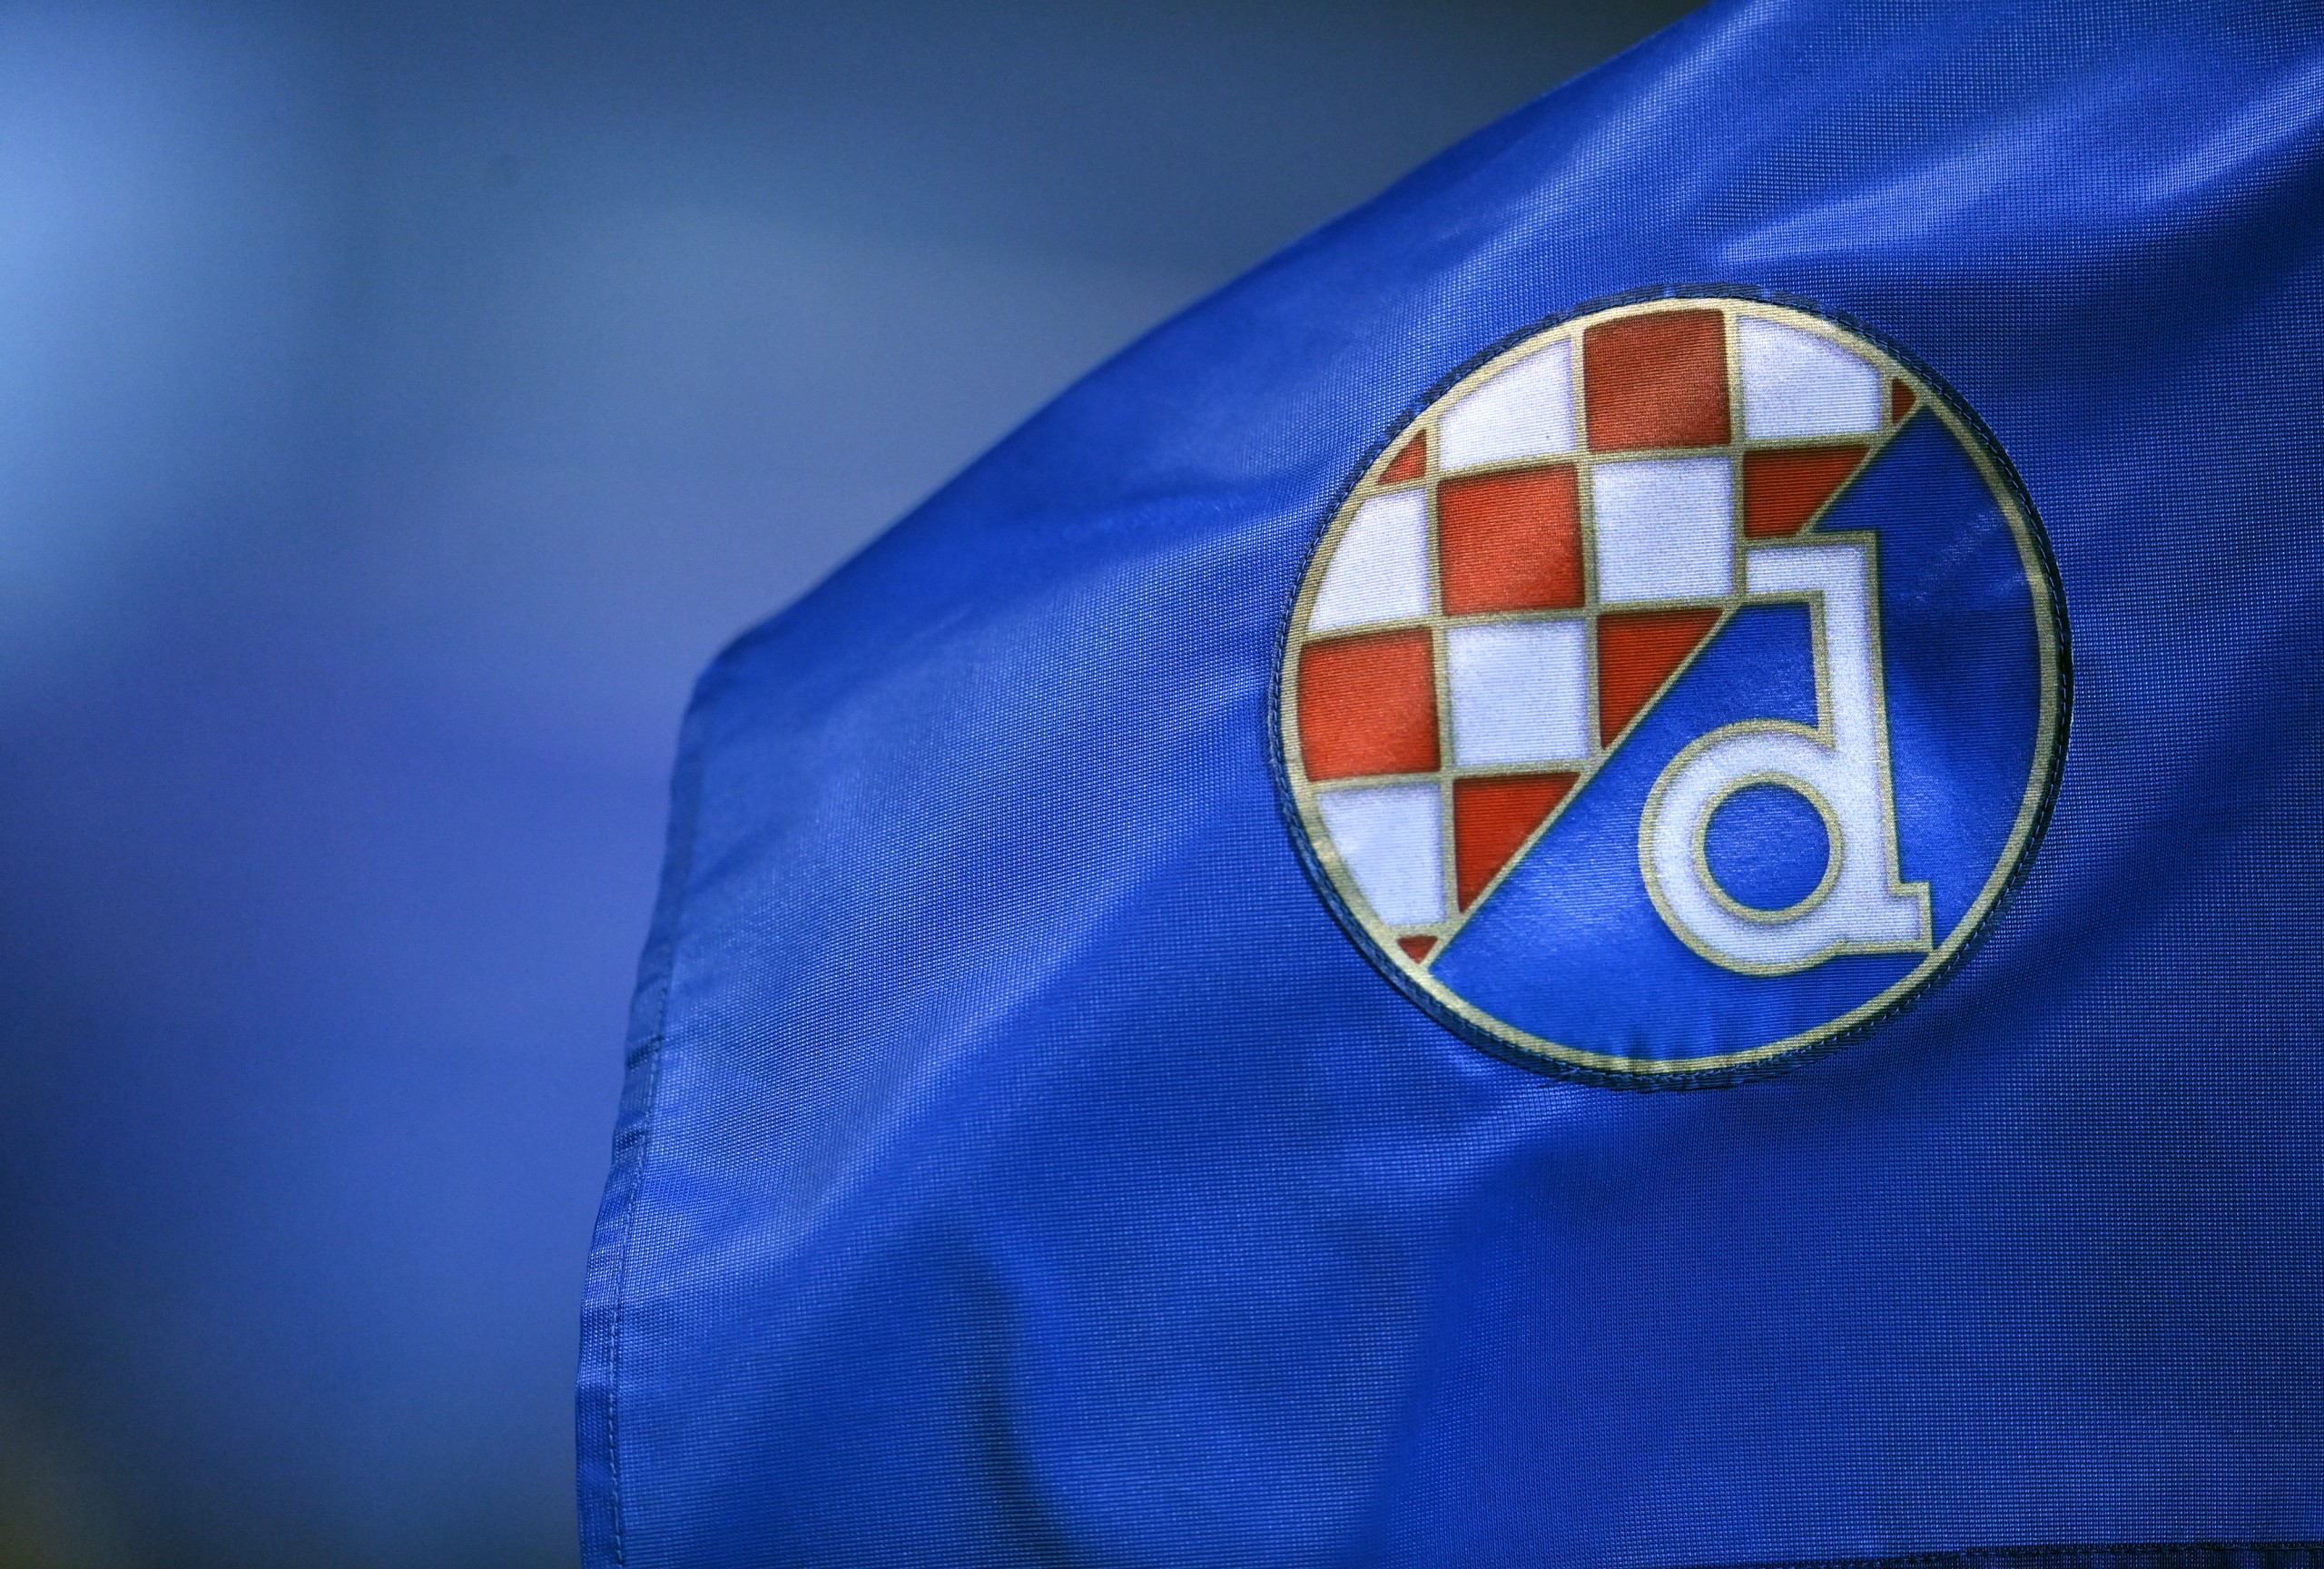 HNK Hajduk Split - HNK Rijeka Rezultati uživo, međusobni susreti i postave